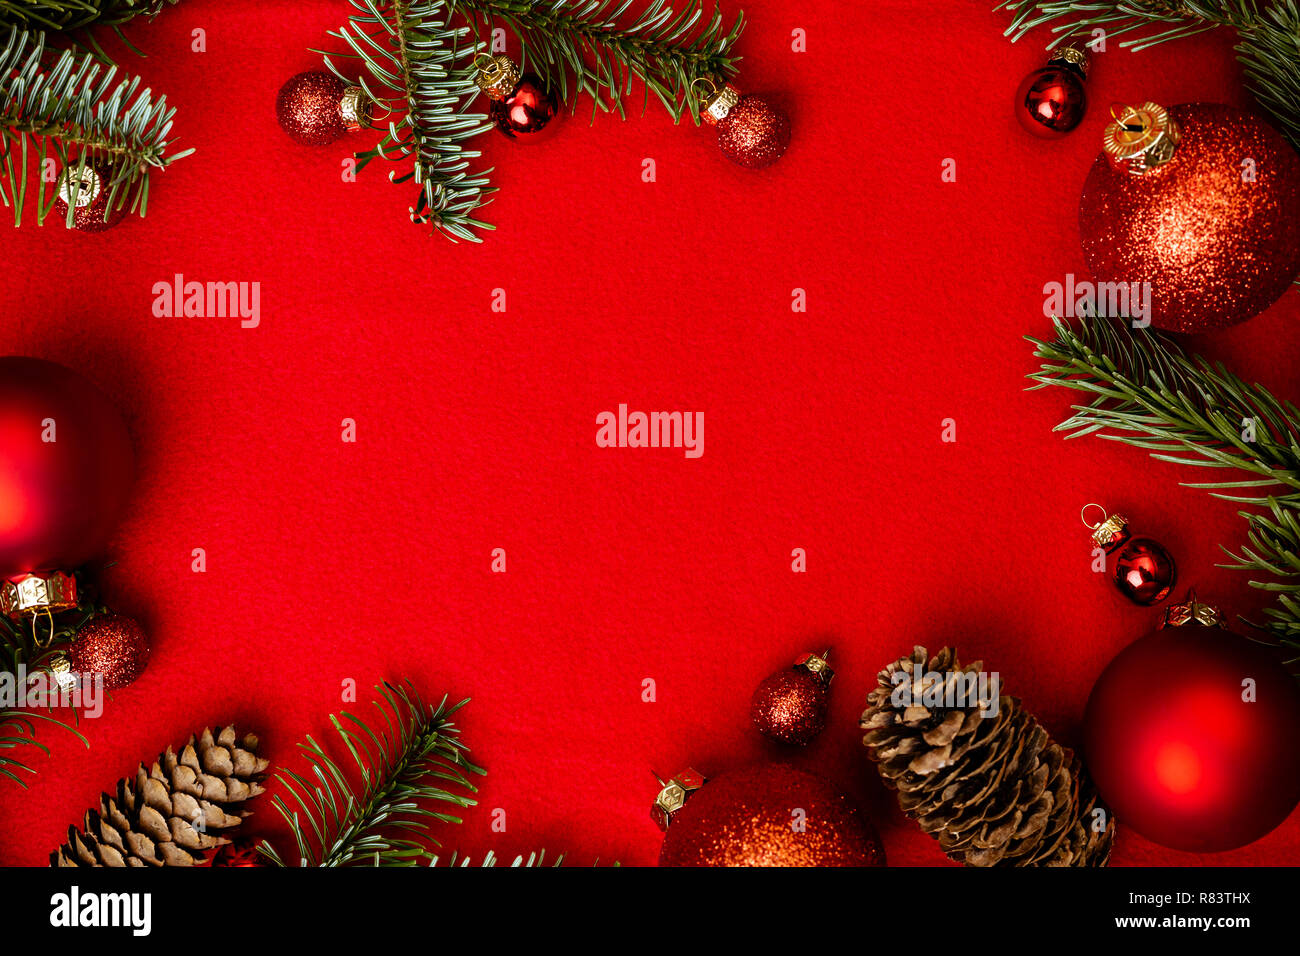 Weihnachten roter Hintergrund mit Tannenbaum, rot weihnachten Kugeln Rahmen. Startseite flache Ansicht mit kopieren. Stockfoto